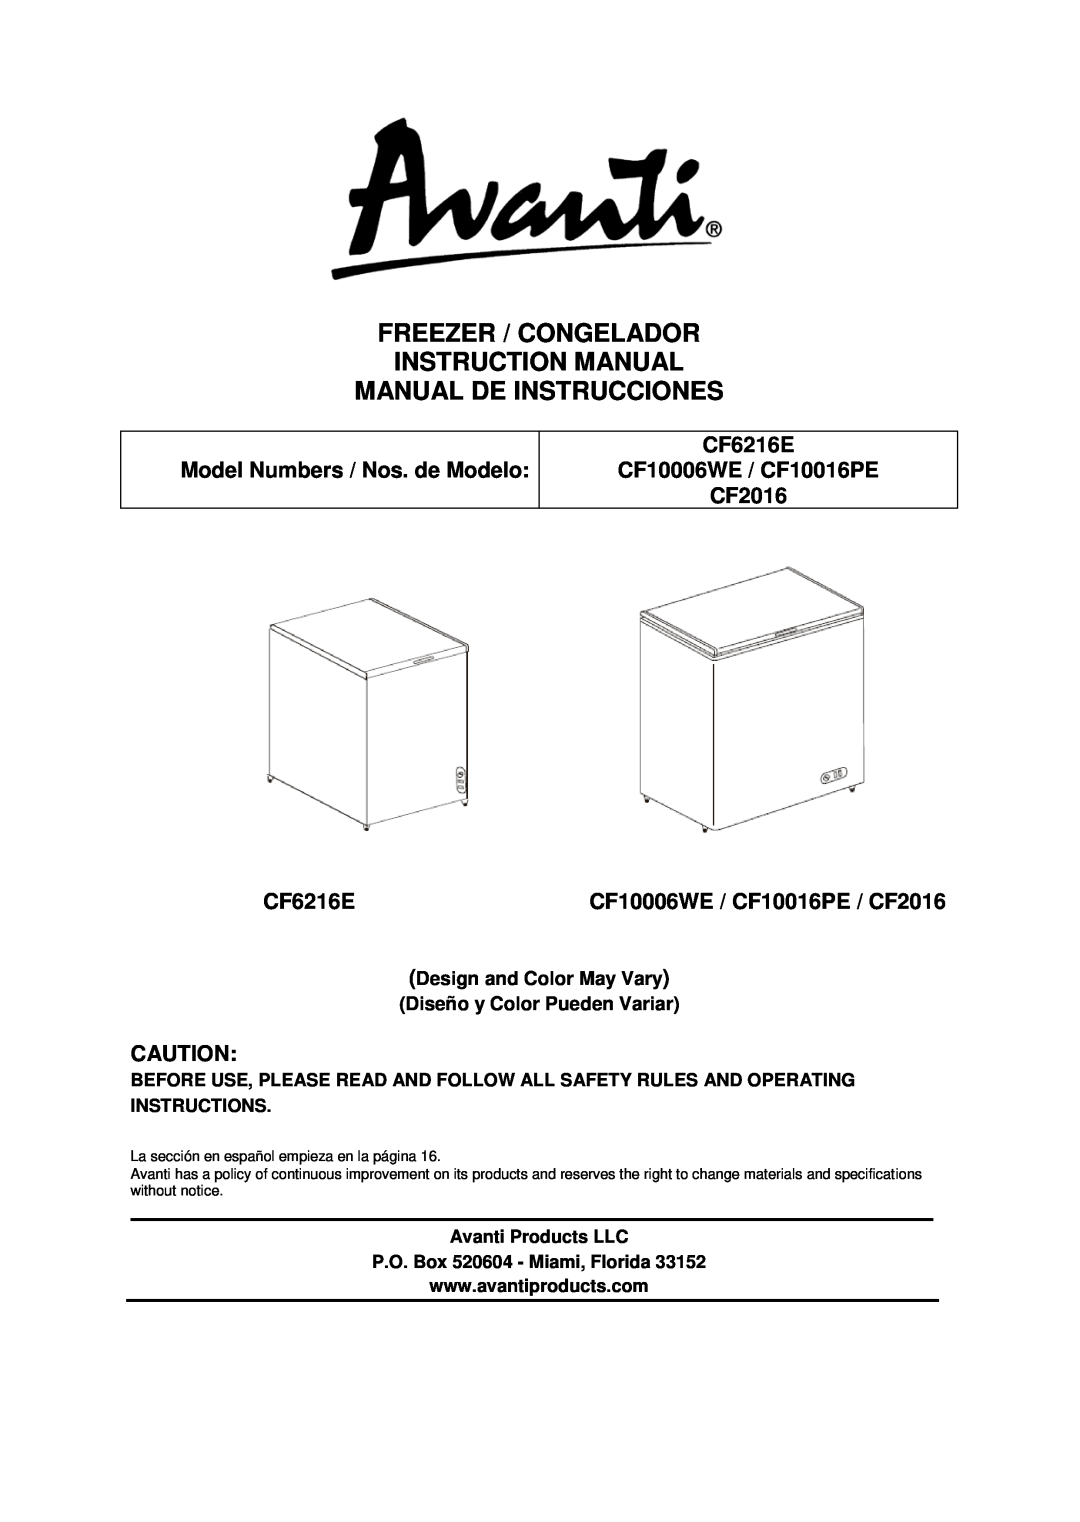 Avanti instruction manual Manual De Instrucciones, Model Numbers / Nos. de Modelo CF626/CF2016, Avanti Products LLC 